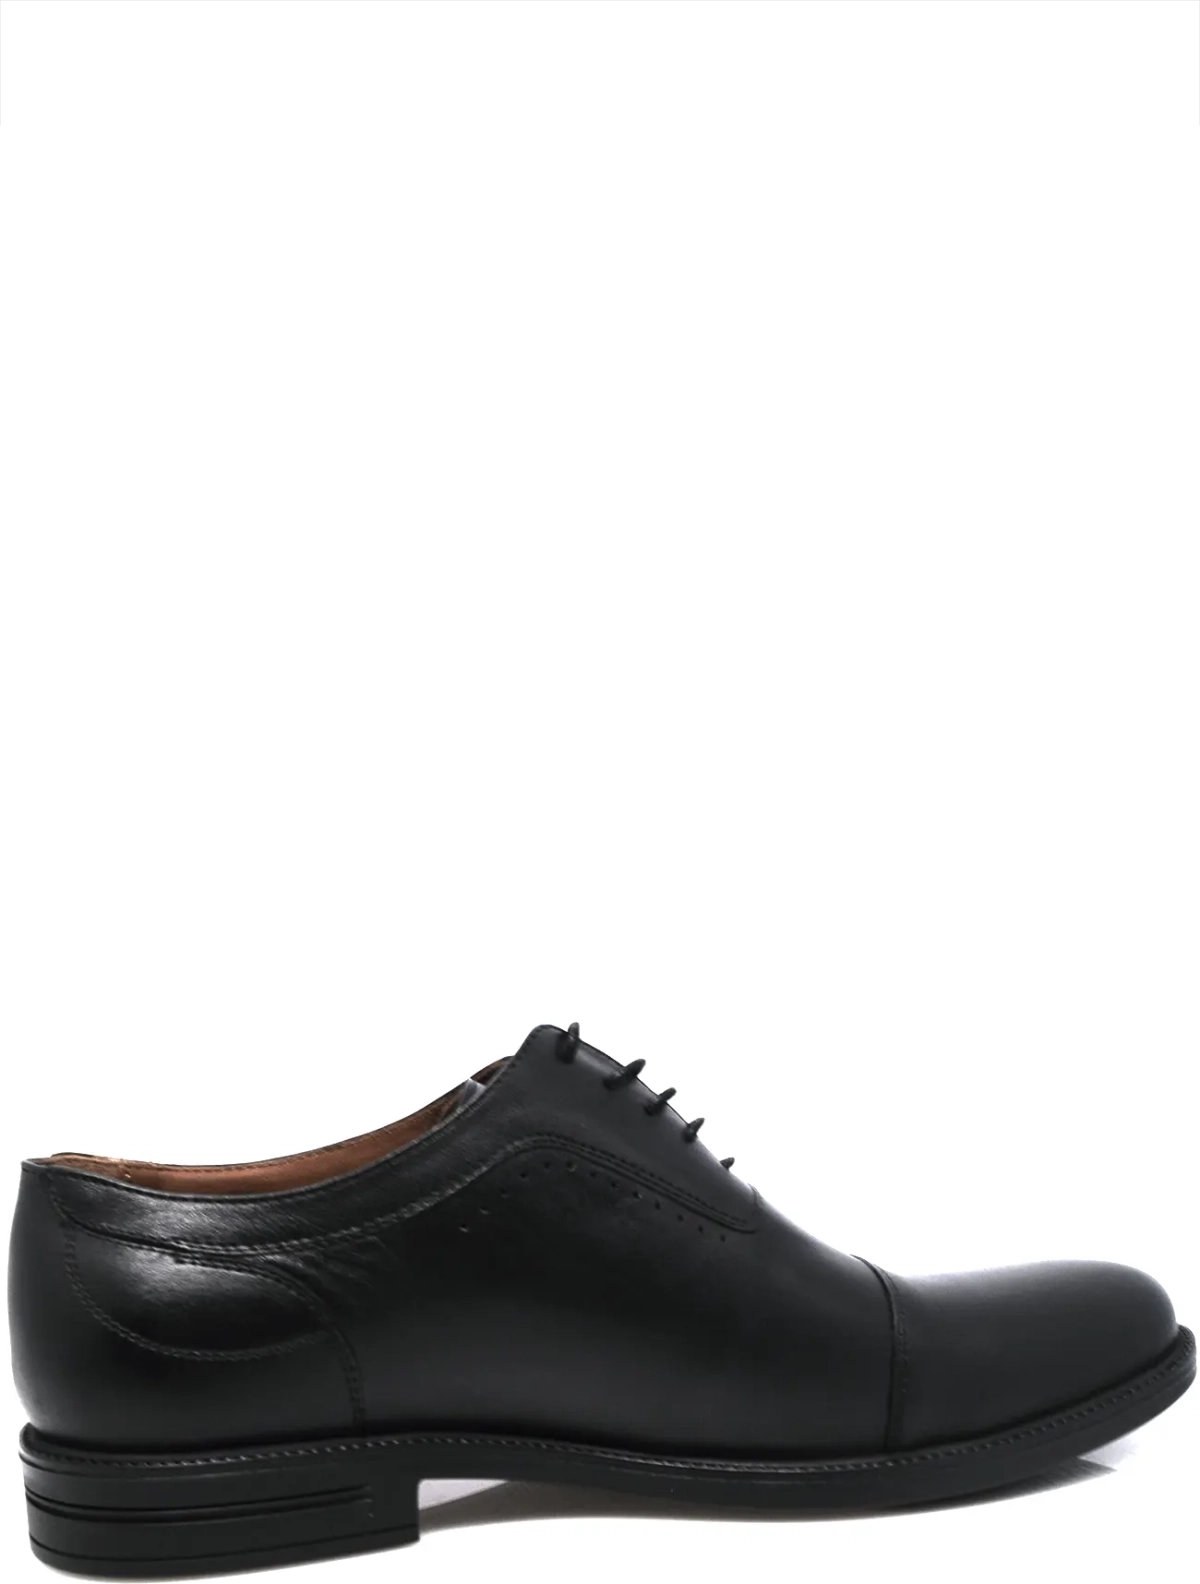 EDERRO 204-1931-228 мужские туфли